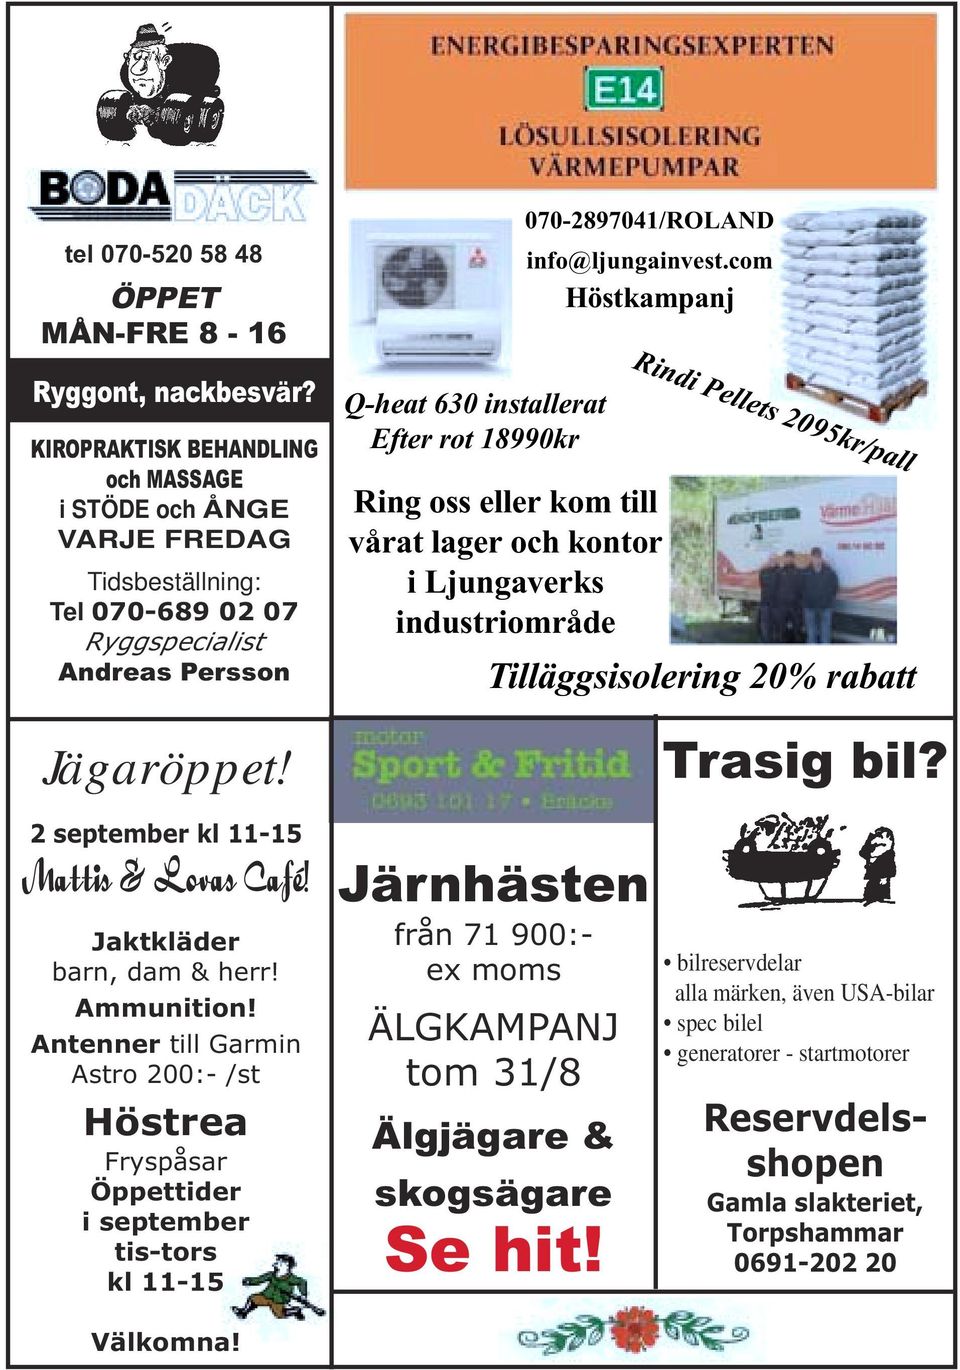 info@ljungainvest.com Höstkampanj Rindi Pellets 2095kr/pall Ring oss eller kom till vårat lager och kontor i Ljungaverks industriområde Tilläggsisolering 20% rabatt Jägaröppet!